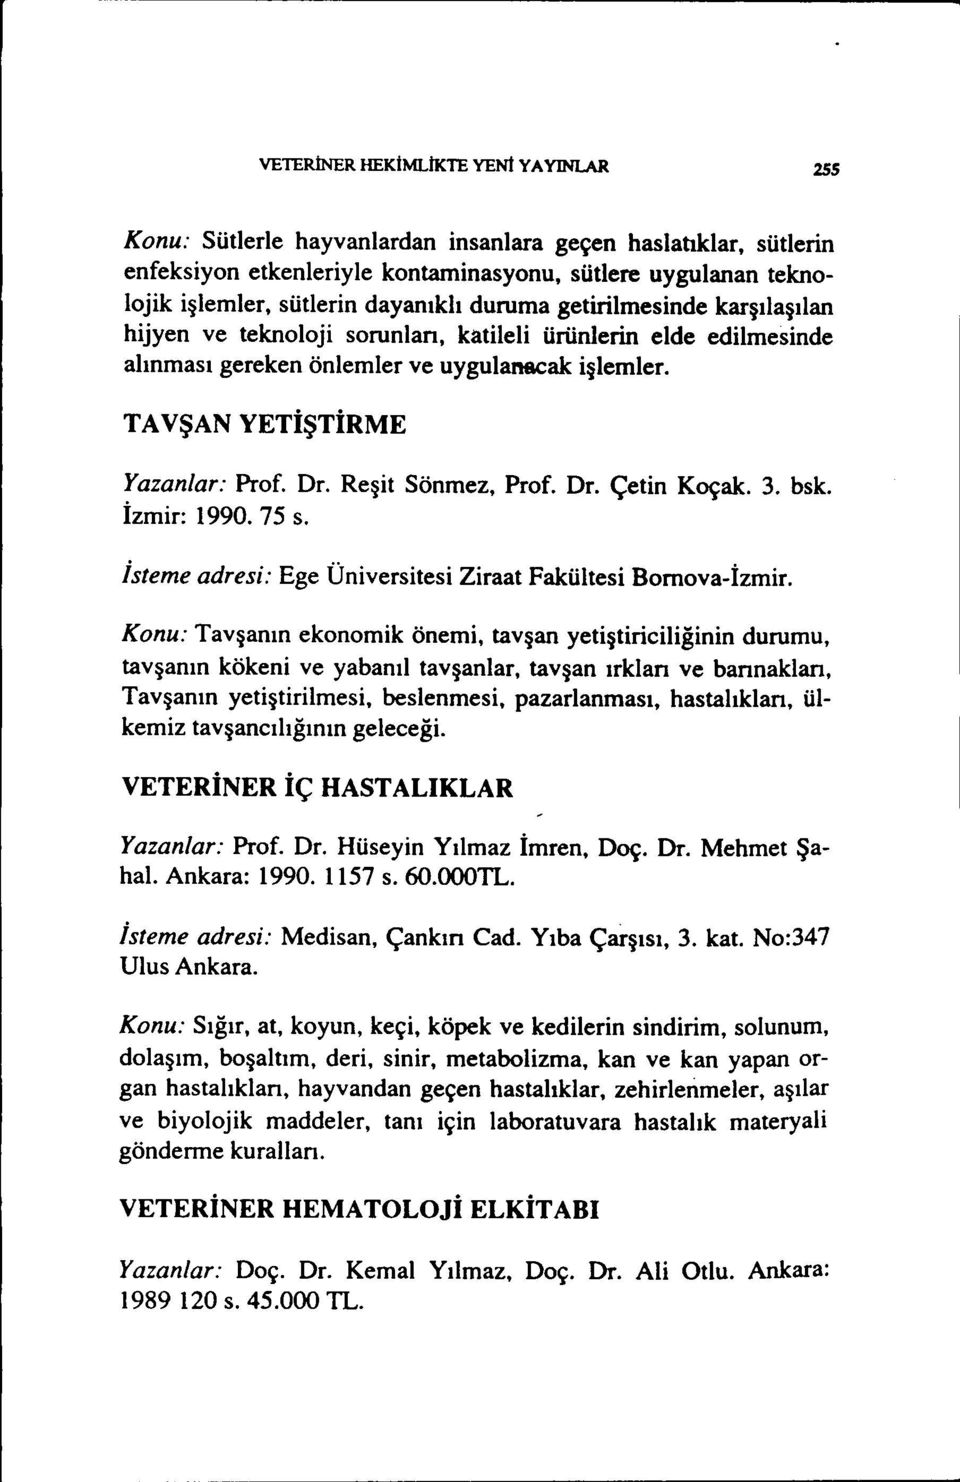 Reşit Sönmez, Prof. Dr. Çetin Koçak. 3. bsk. İzmir: 1990. 75 s. isteme adresi: Ege Üniversitesi Ziraat Fakültesi Bornova-İzmir.